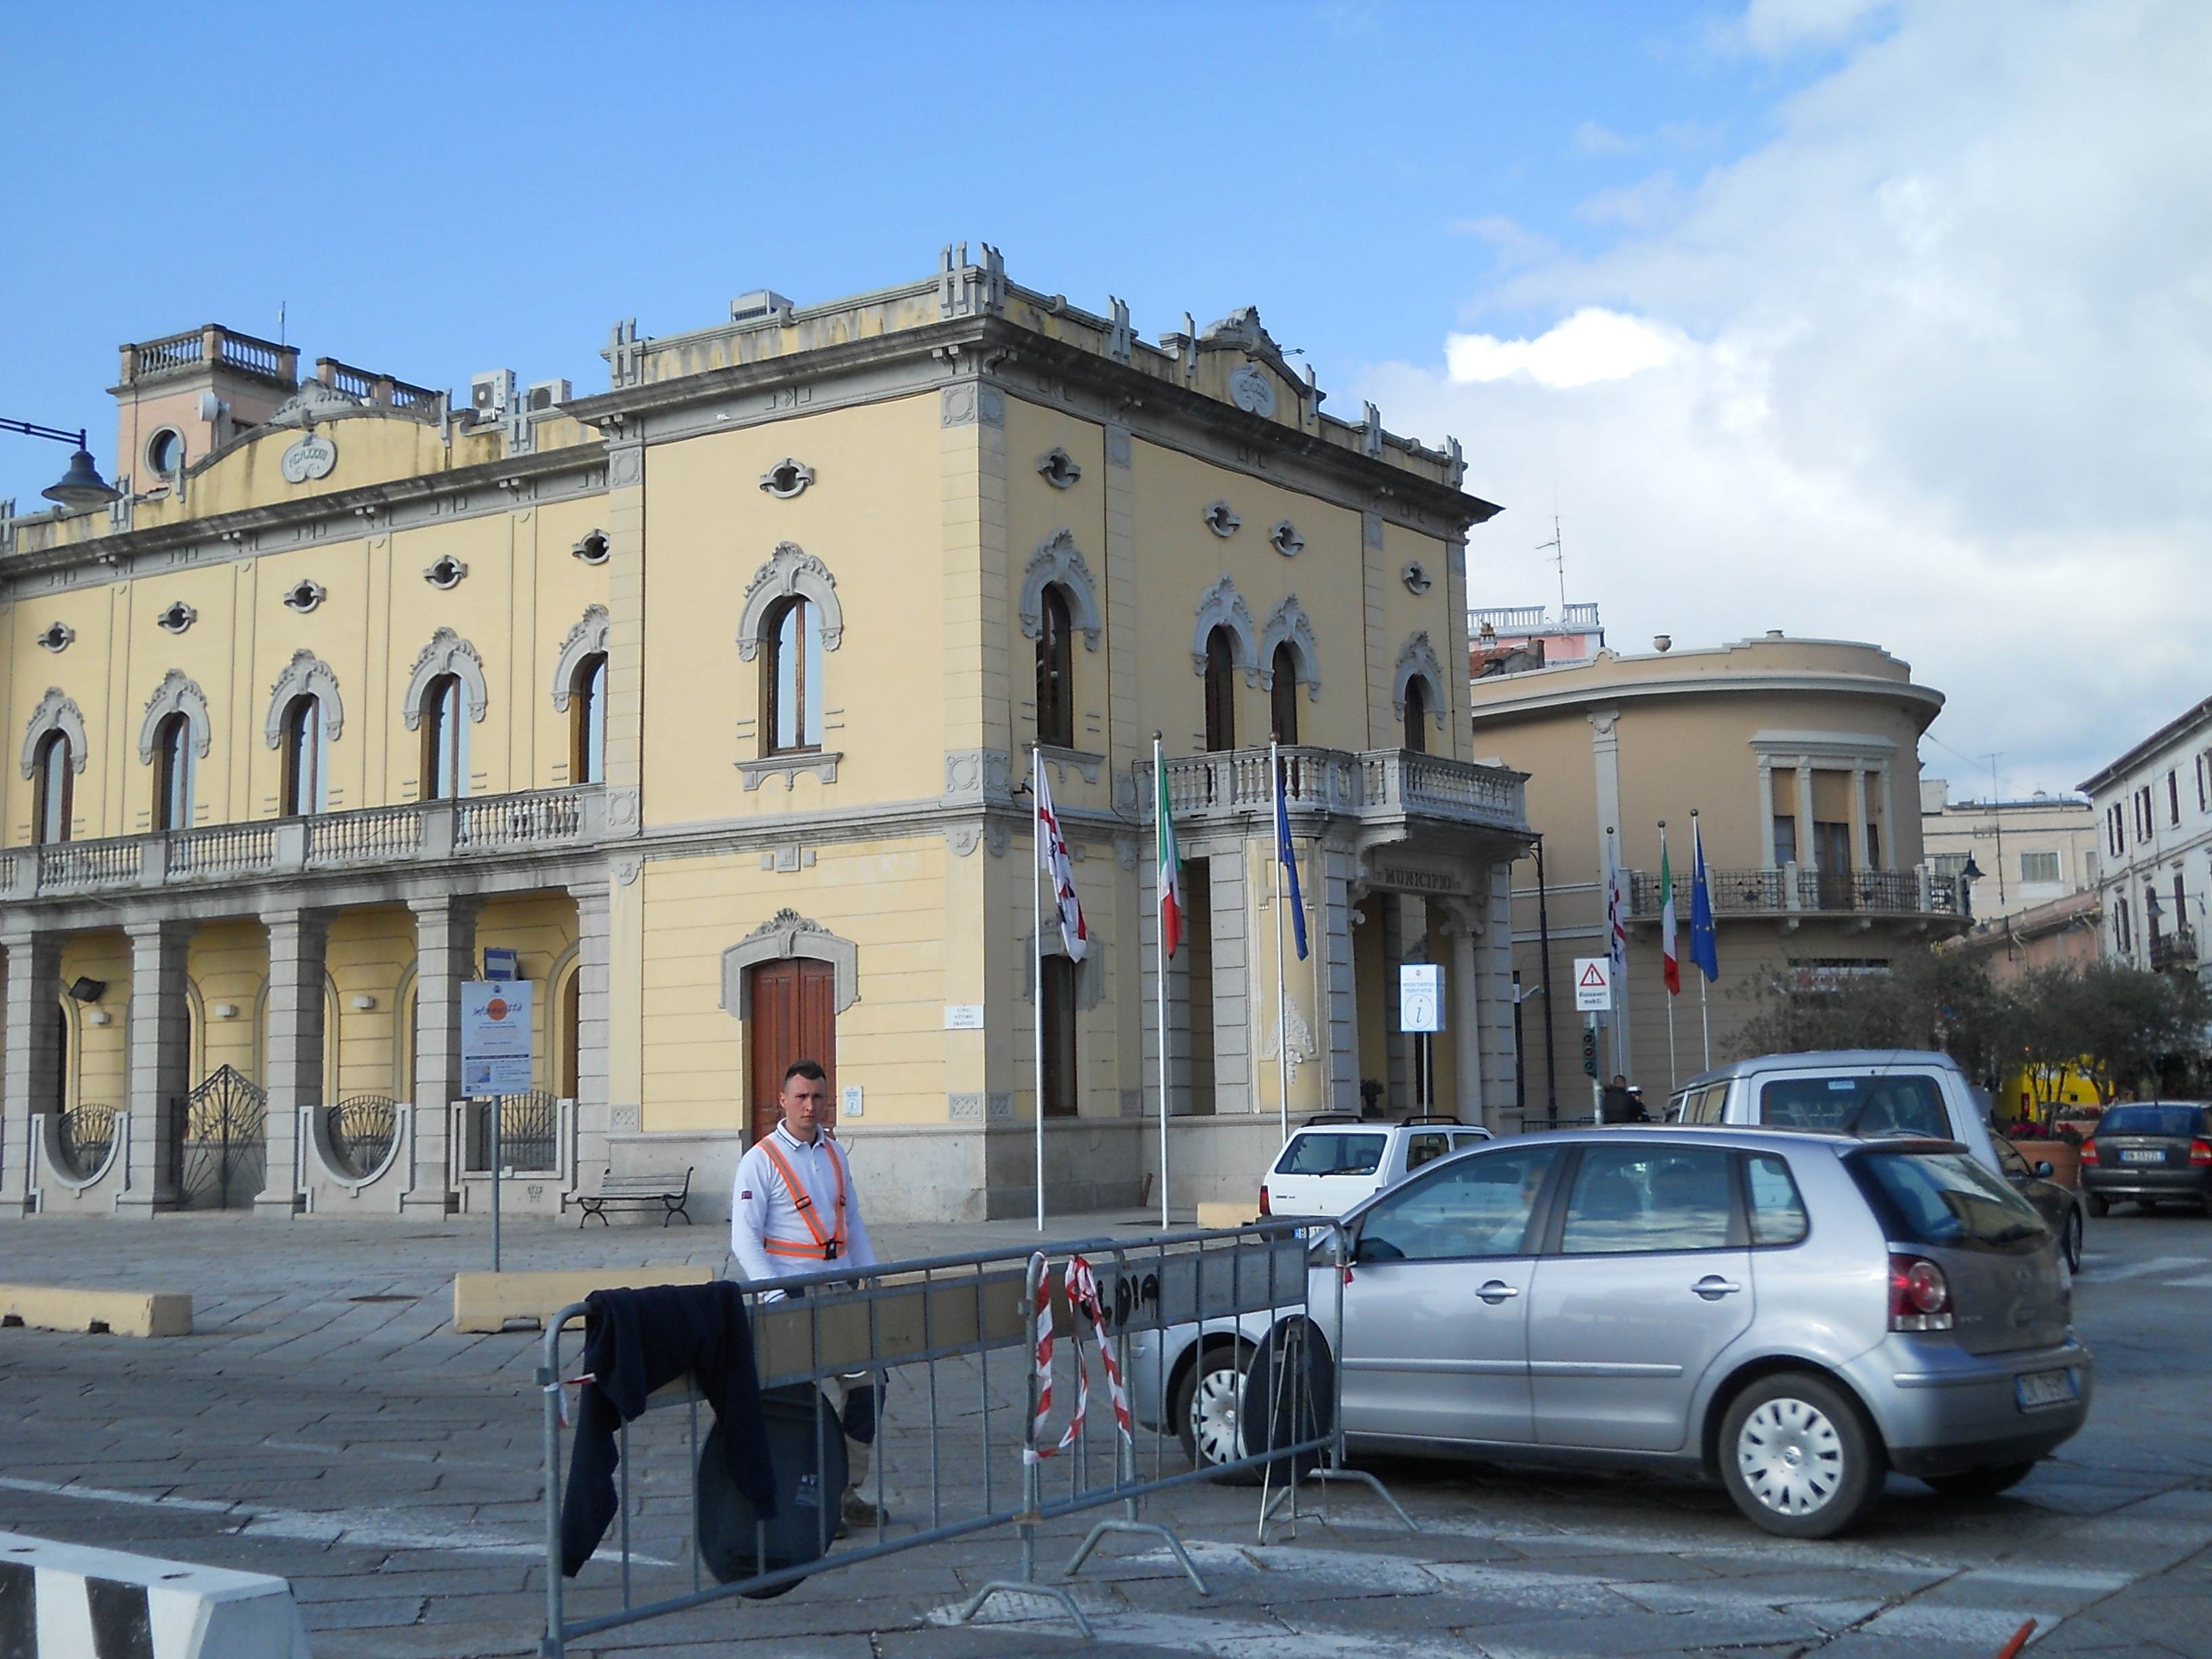 Ufficio turistico di Olbia: novità e progetti in arrivo